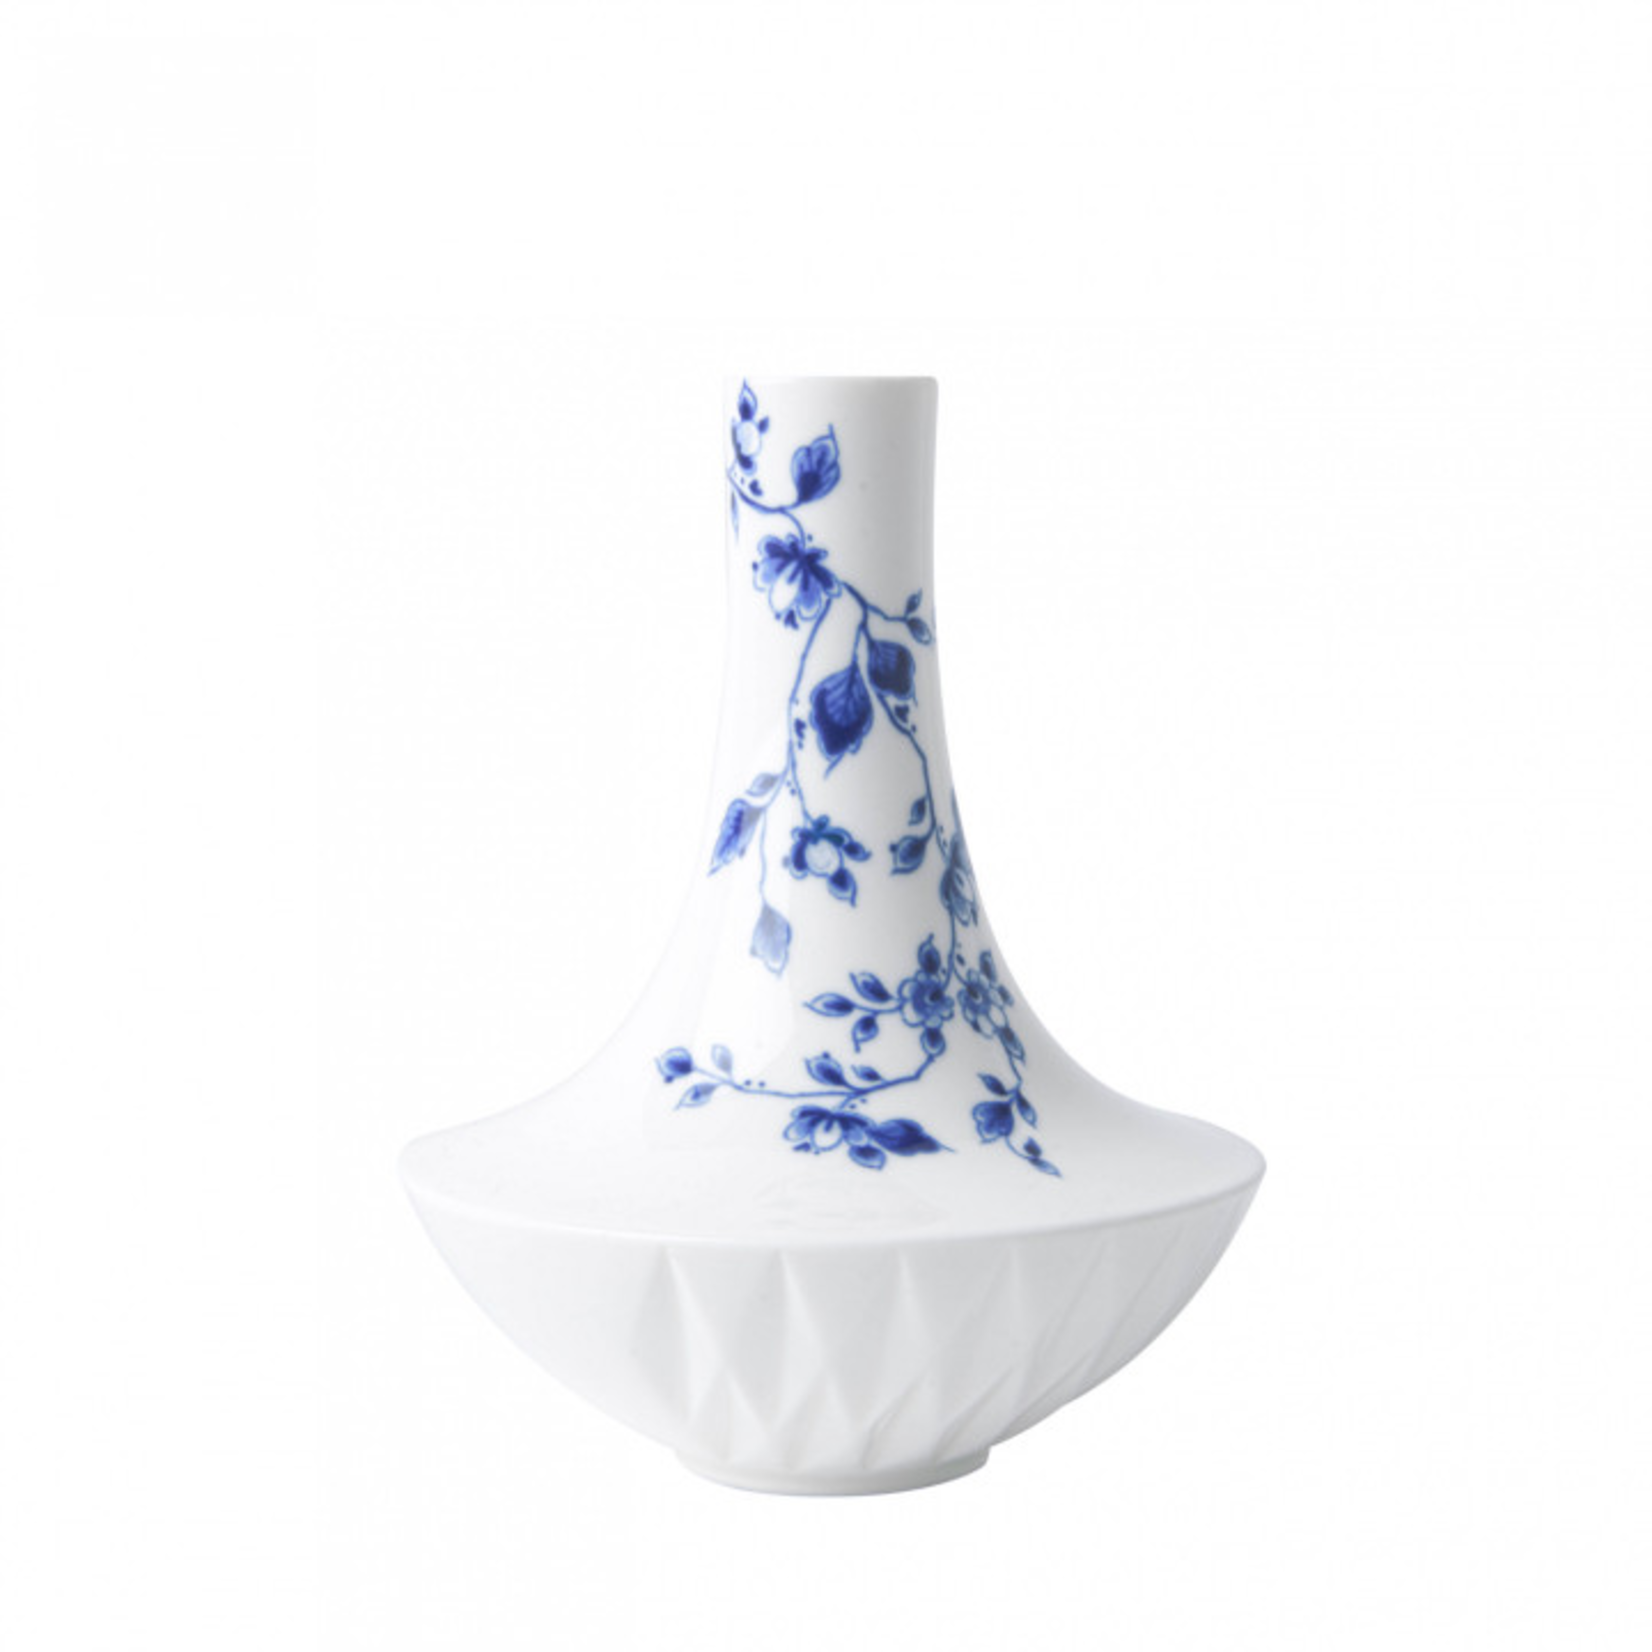 Heinen Delftware Blue Fold Vase Nr. 1